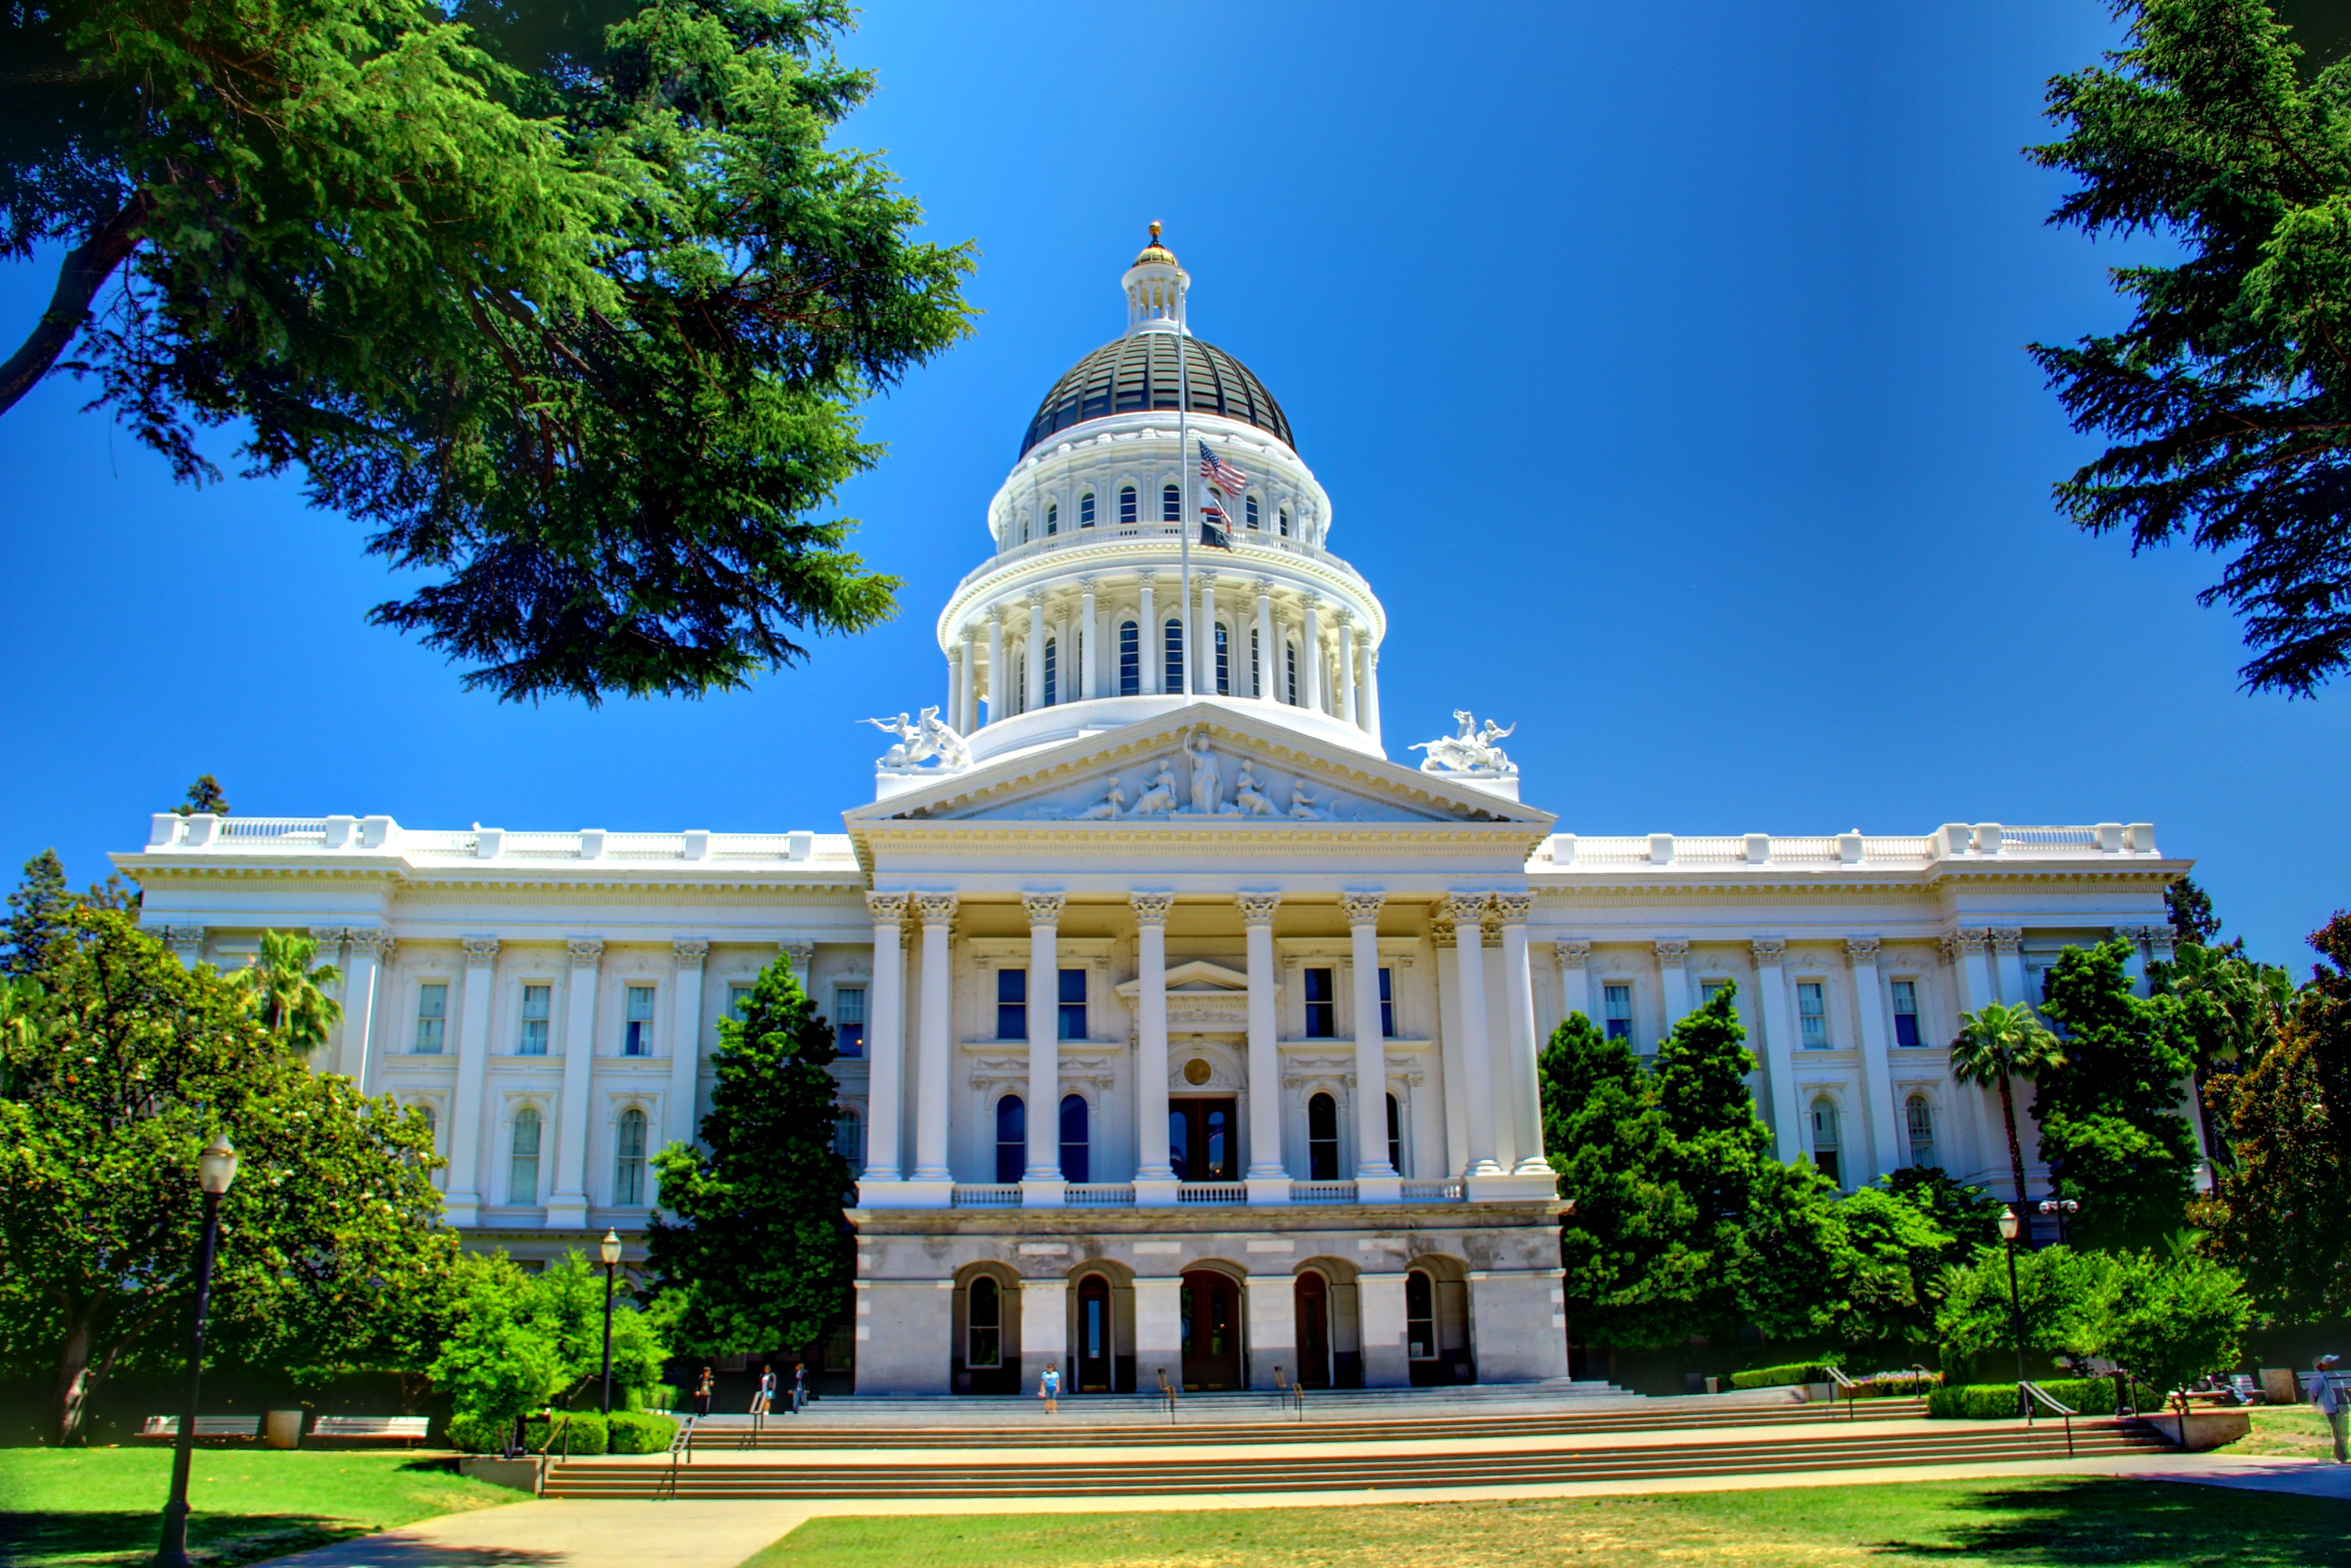 The California Capitol